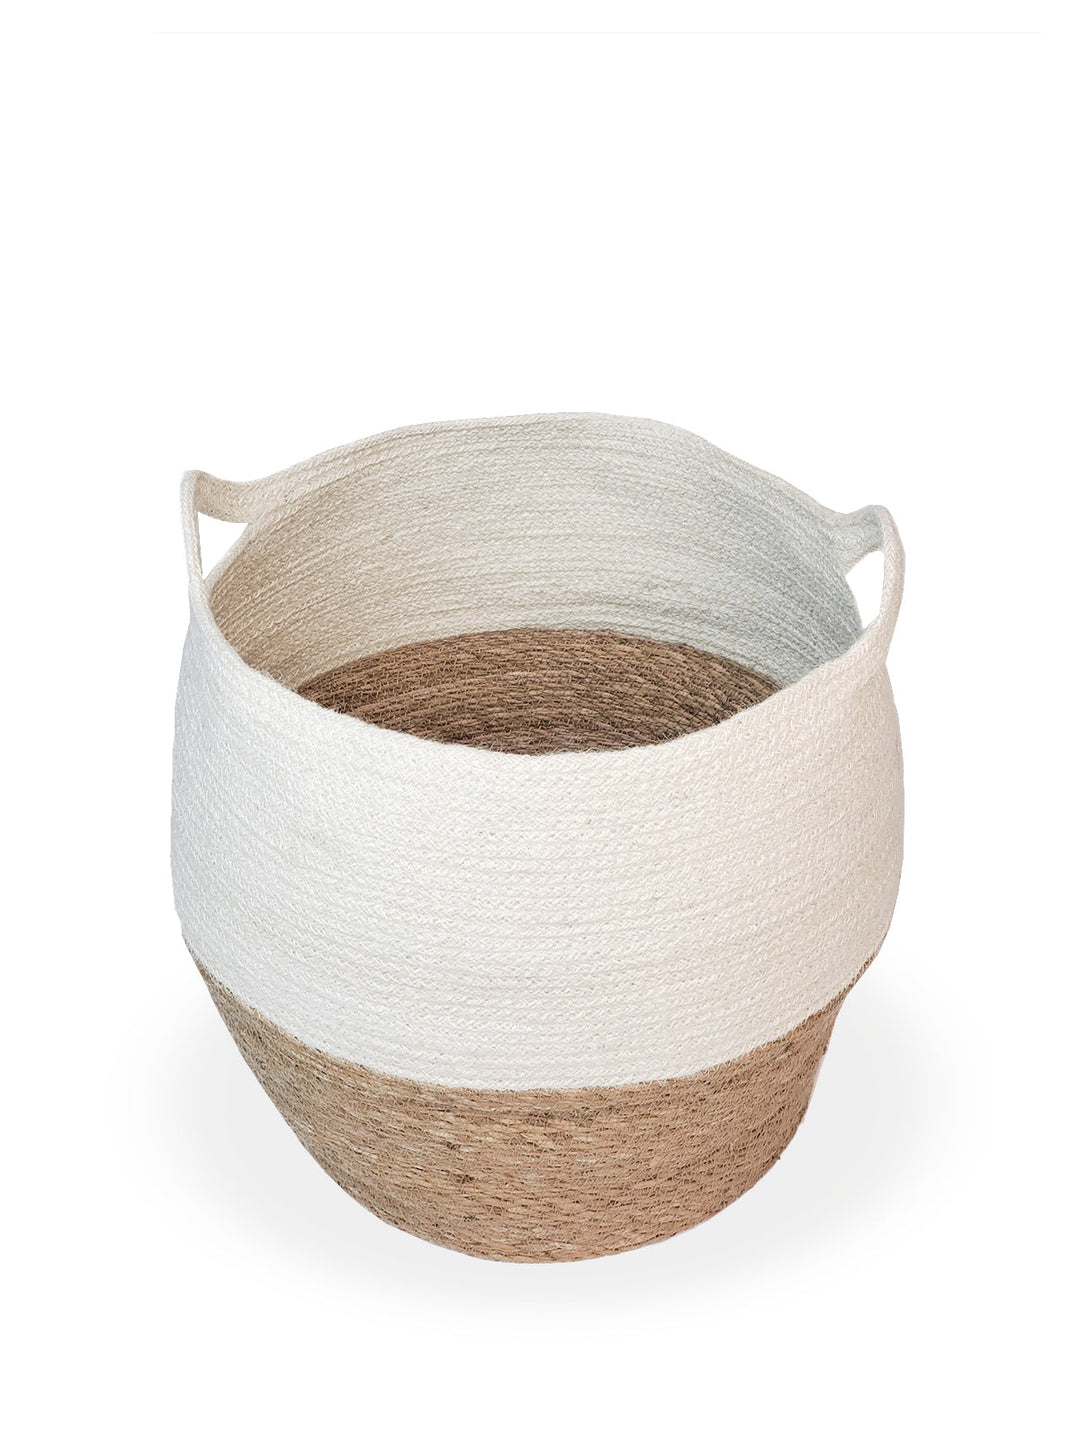 Agora Jar Basket - Natural by KORISSA